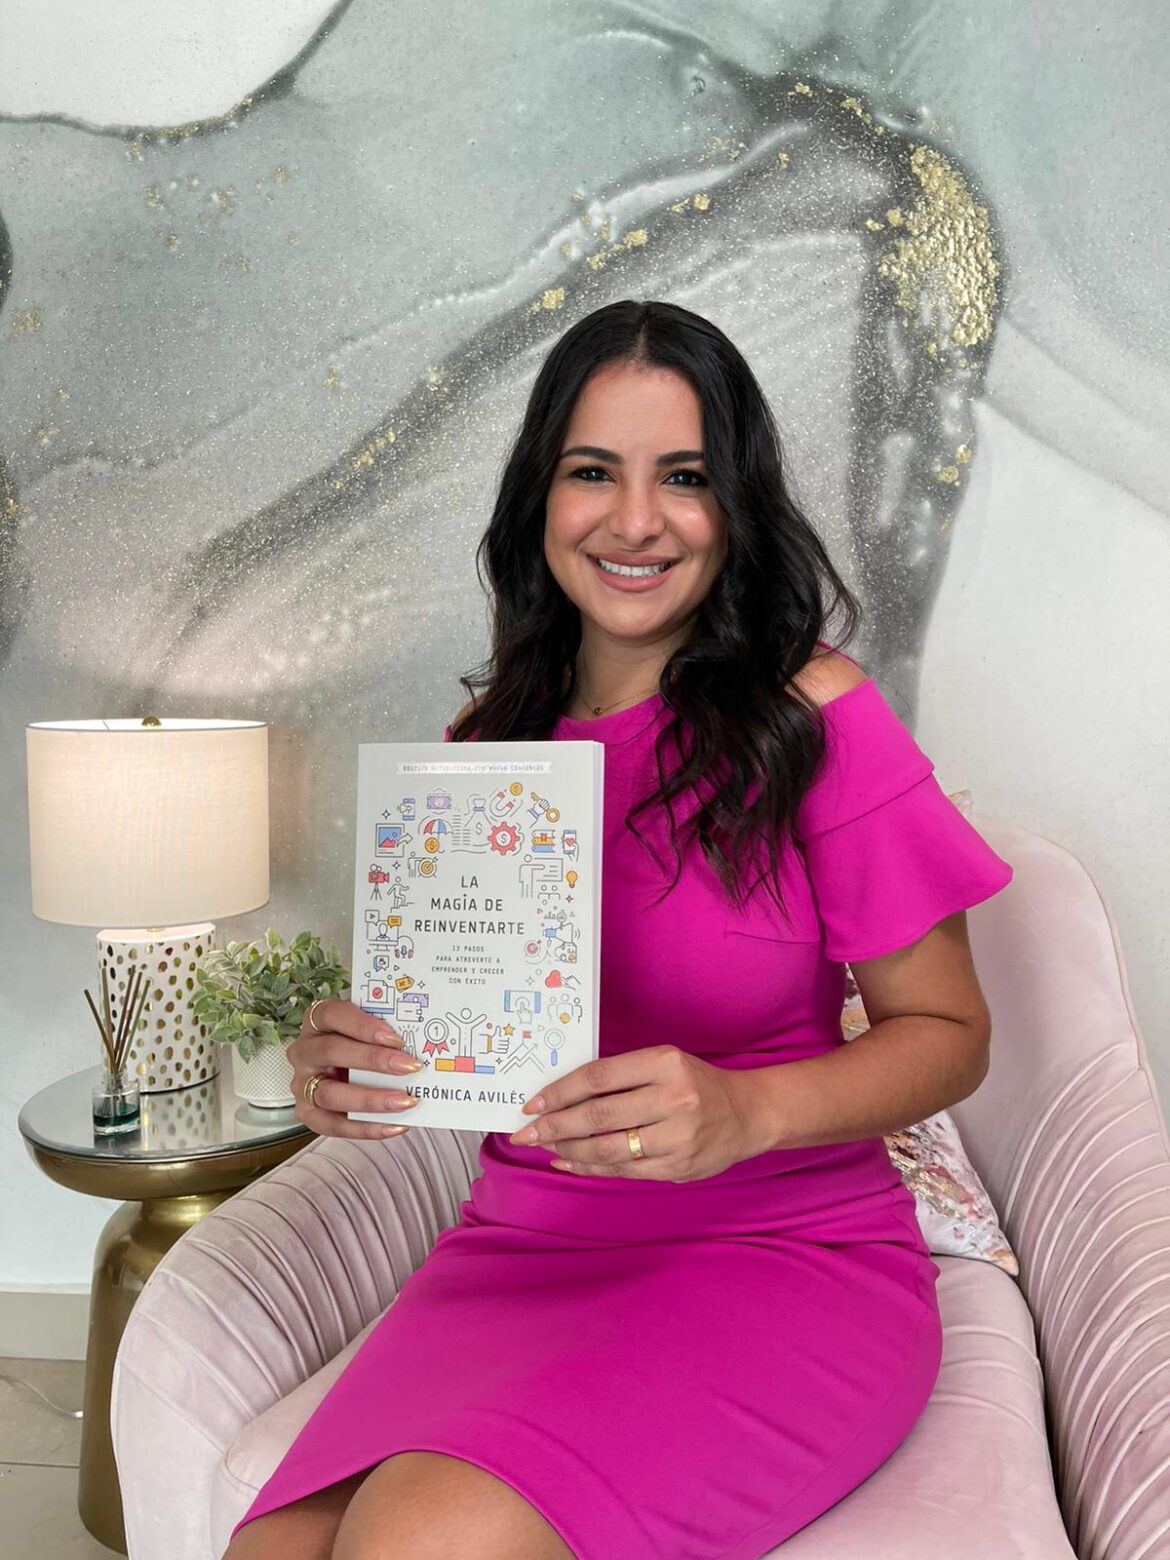 Verónica Avilés, principal influyente en Puerto Rico, Latinoamérica y Estados Unidos en Ecommerce lanza su nuevo Libro “La Magia de Reinventarte”